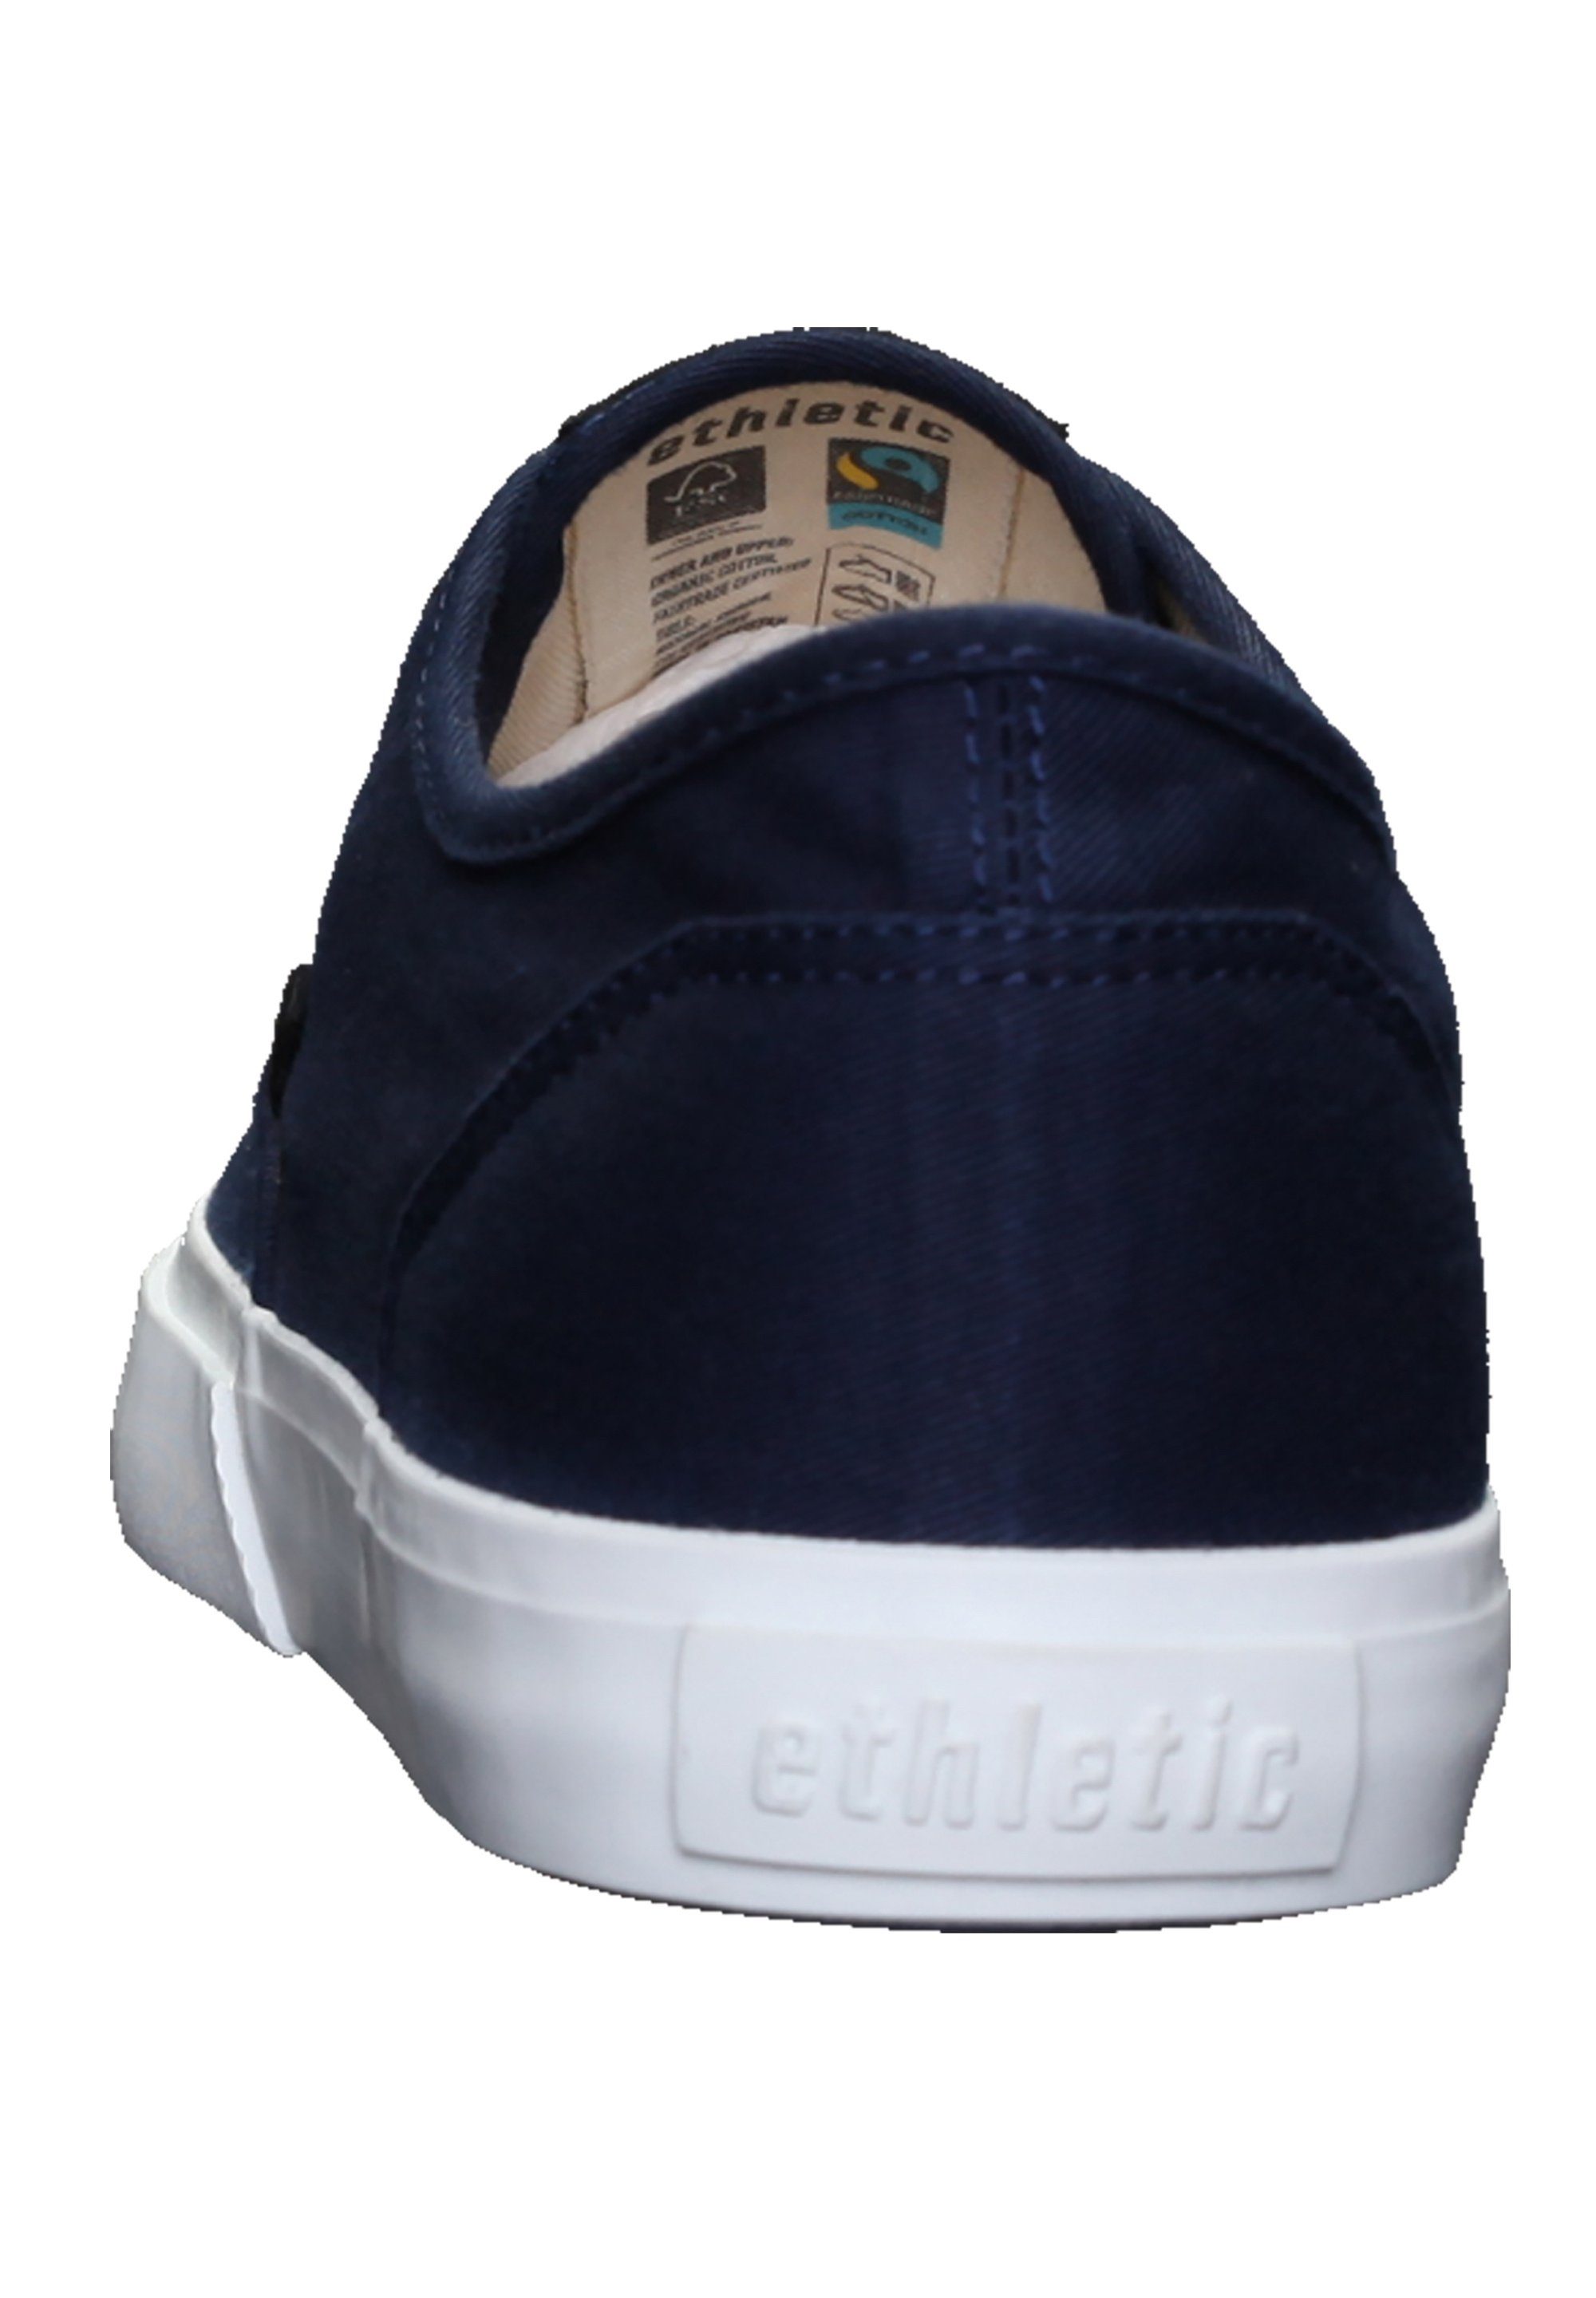 Produkt Kole Sneaker blue ETHLETIC ocean Fairtrade